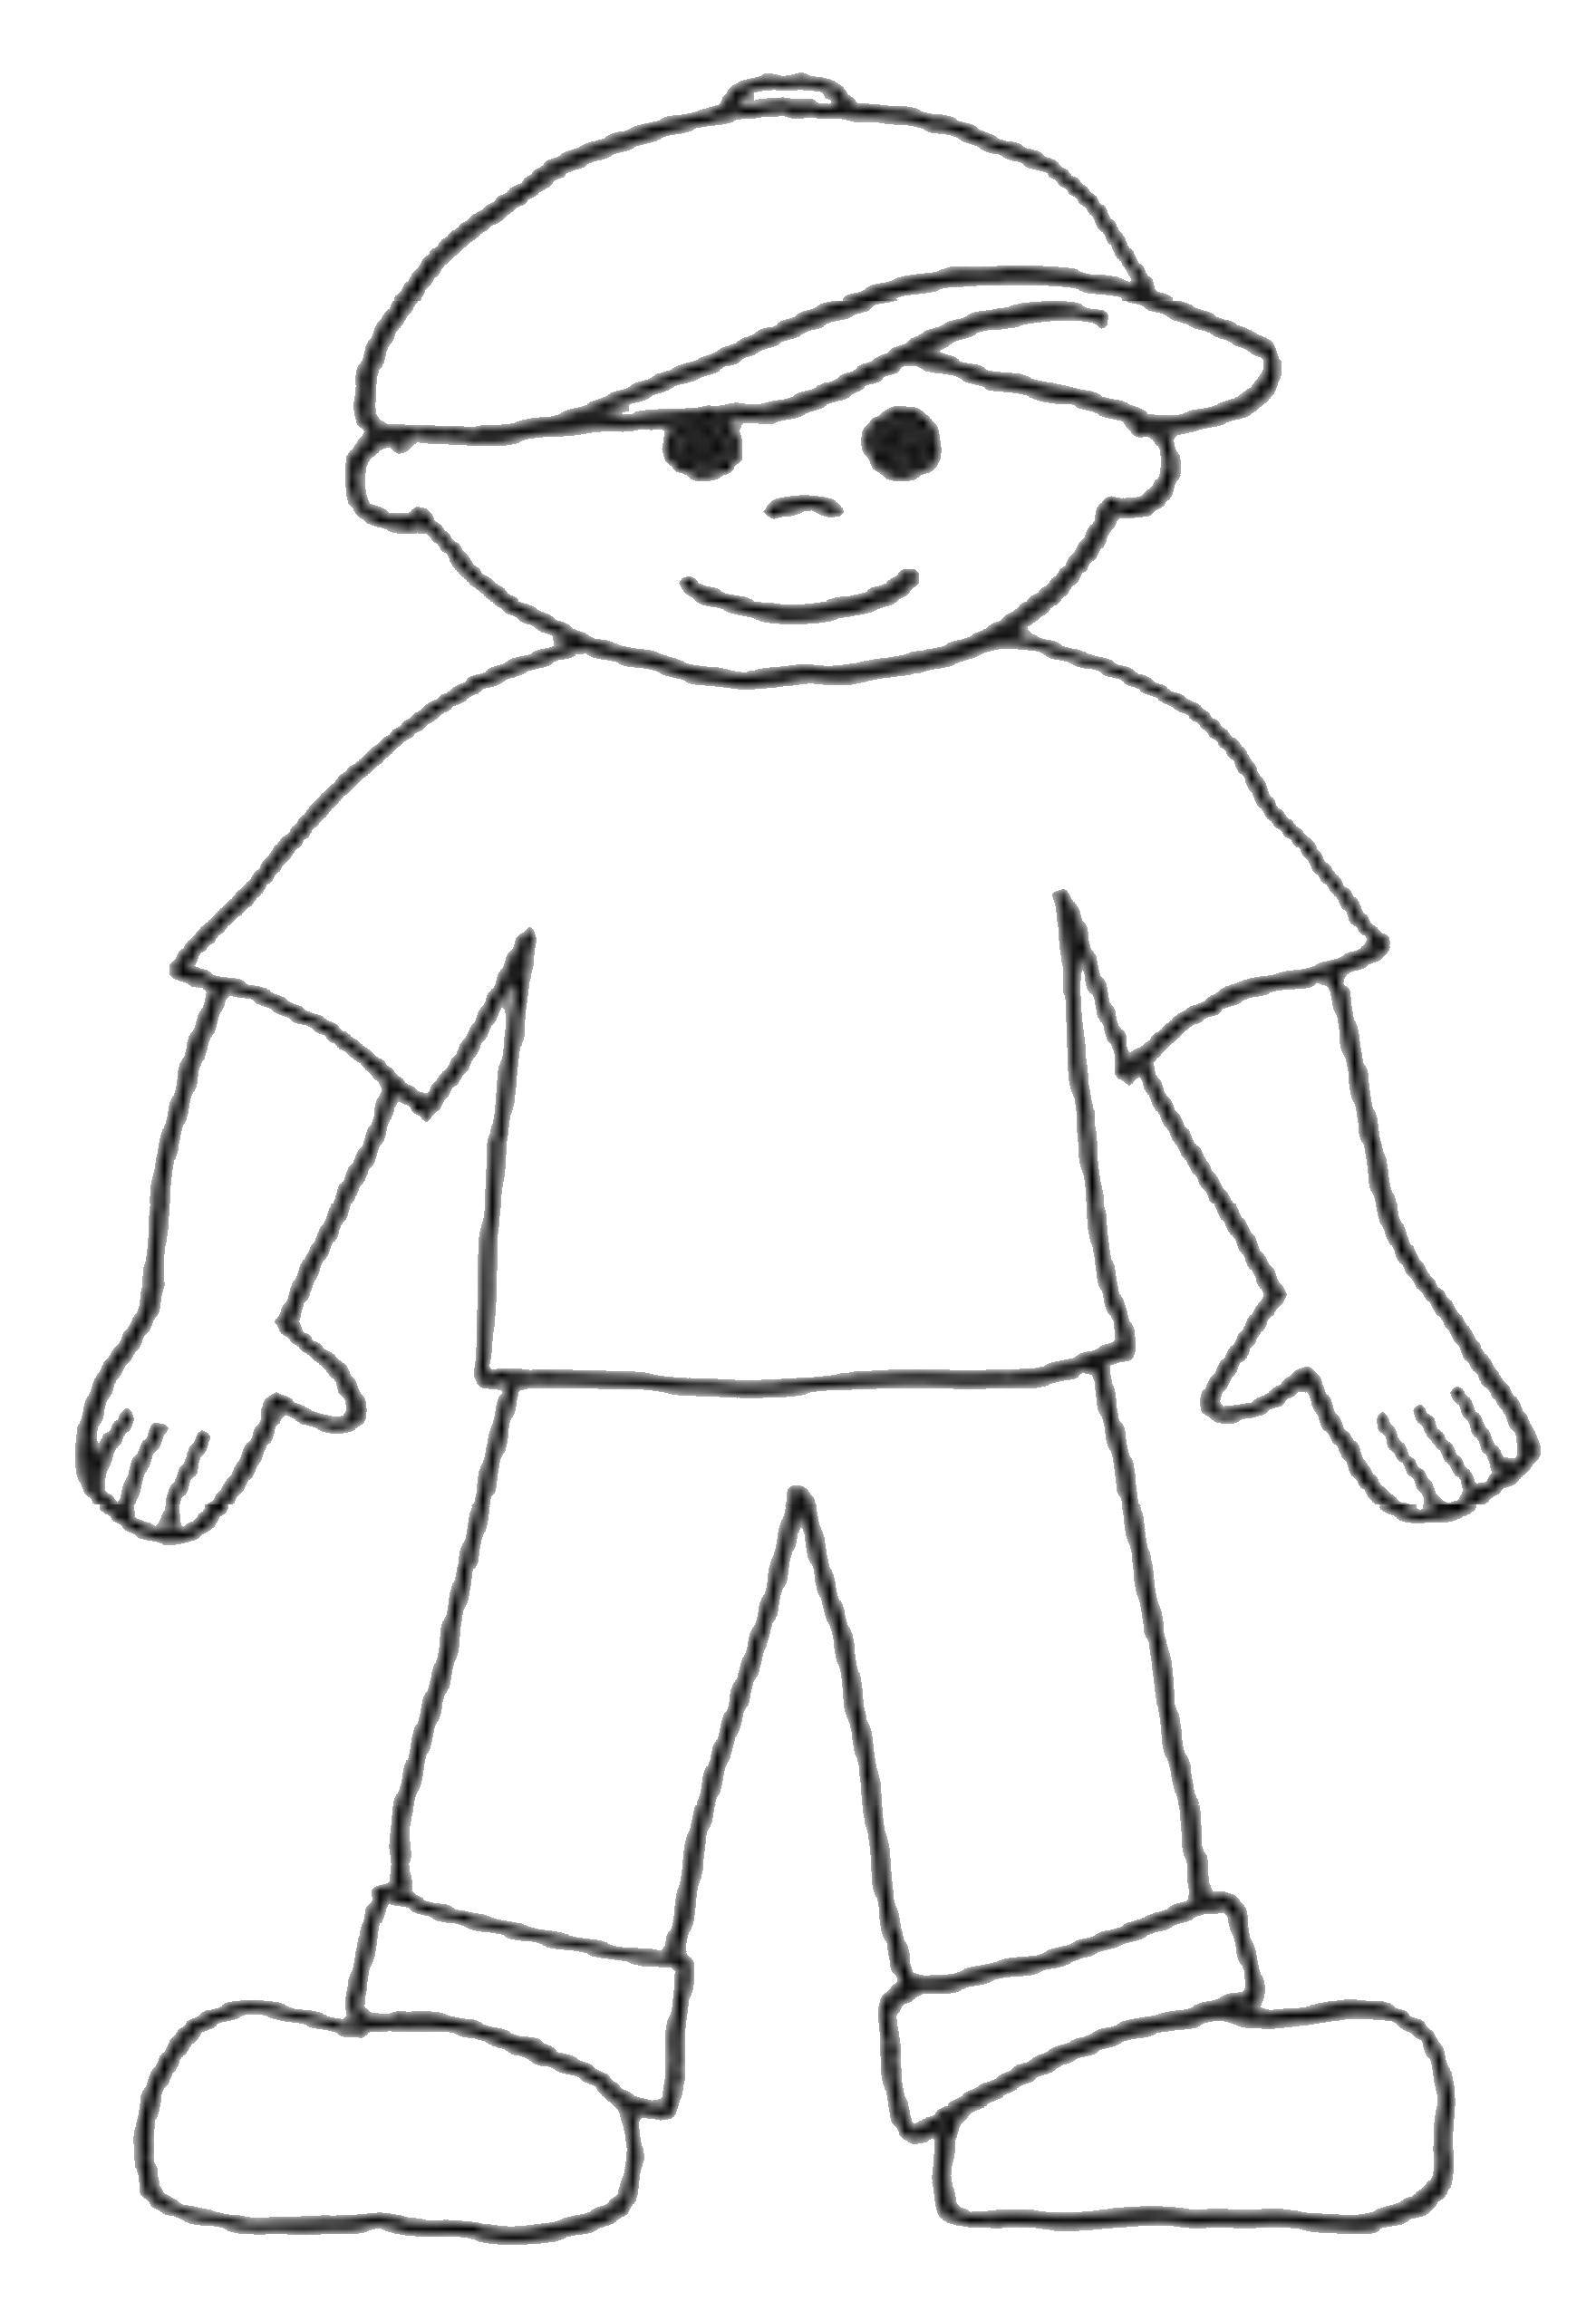 Название: Раскраска Мальчик в кепке. Категория: контур мальчика. Теги: мальчик, кепка, футболка.